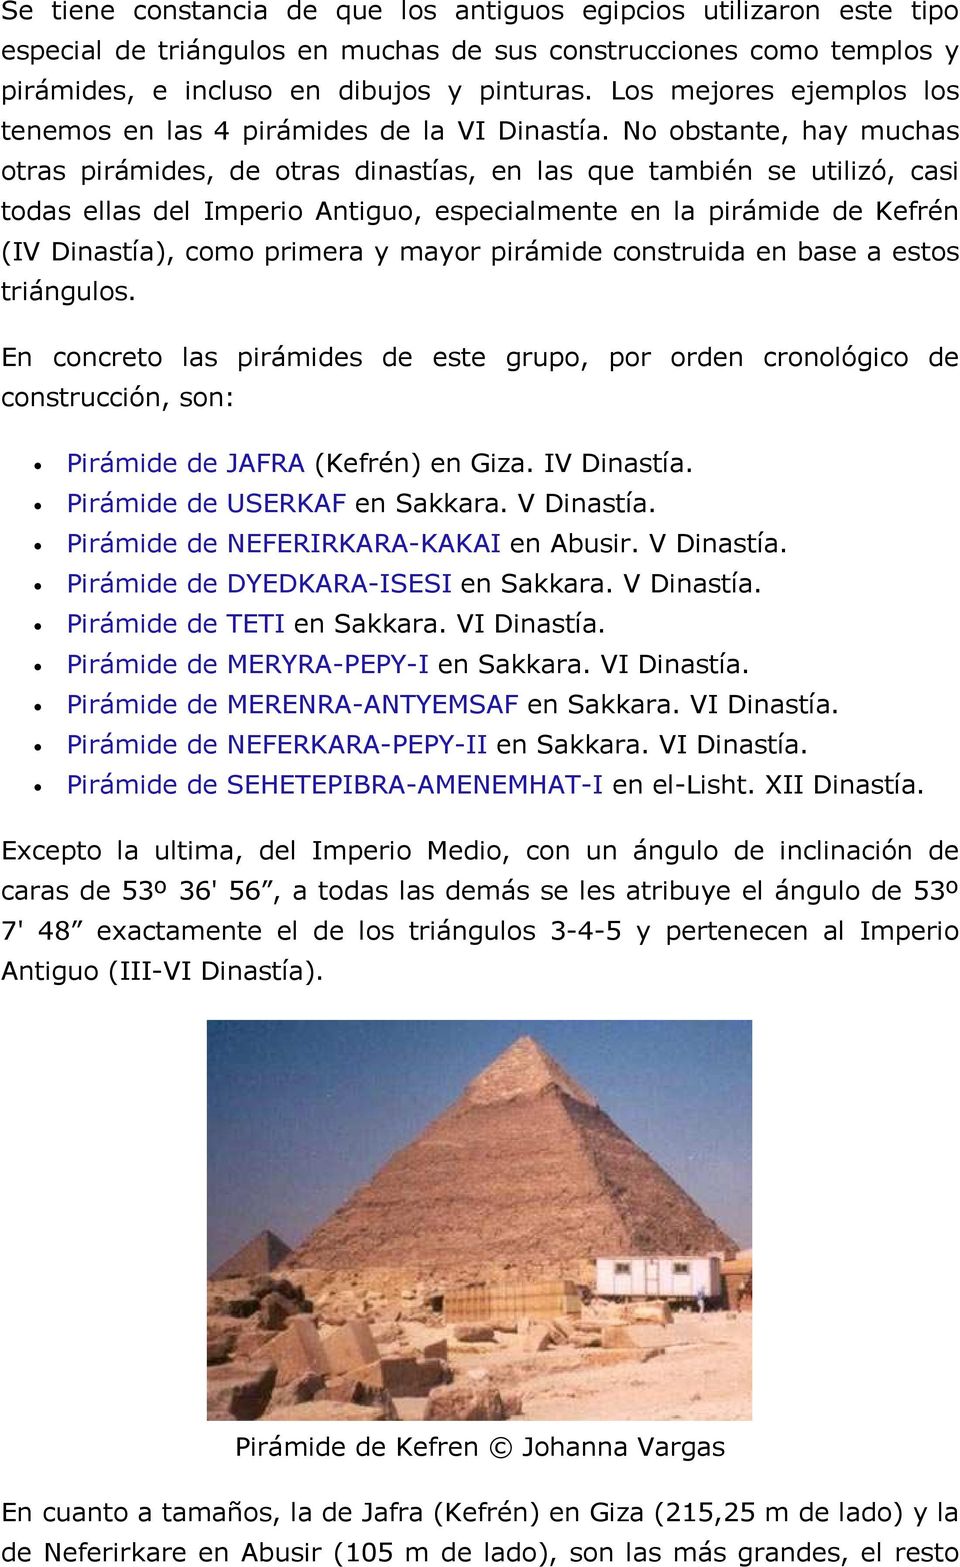 No obstante, hay muchas otras pirámides, de otras dinastías, en las que también se utilizó, casi todas ellas del Imperio Antiguo, especialmente en la pirámide de Kefrén (IV Dinastía), como primera y